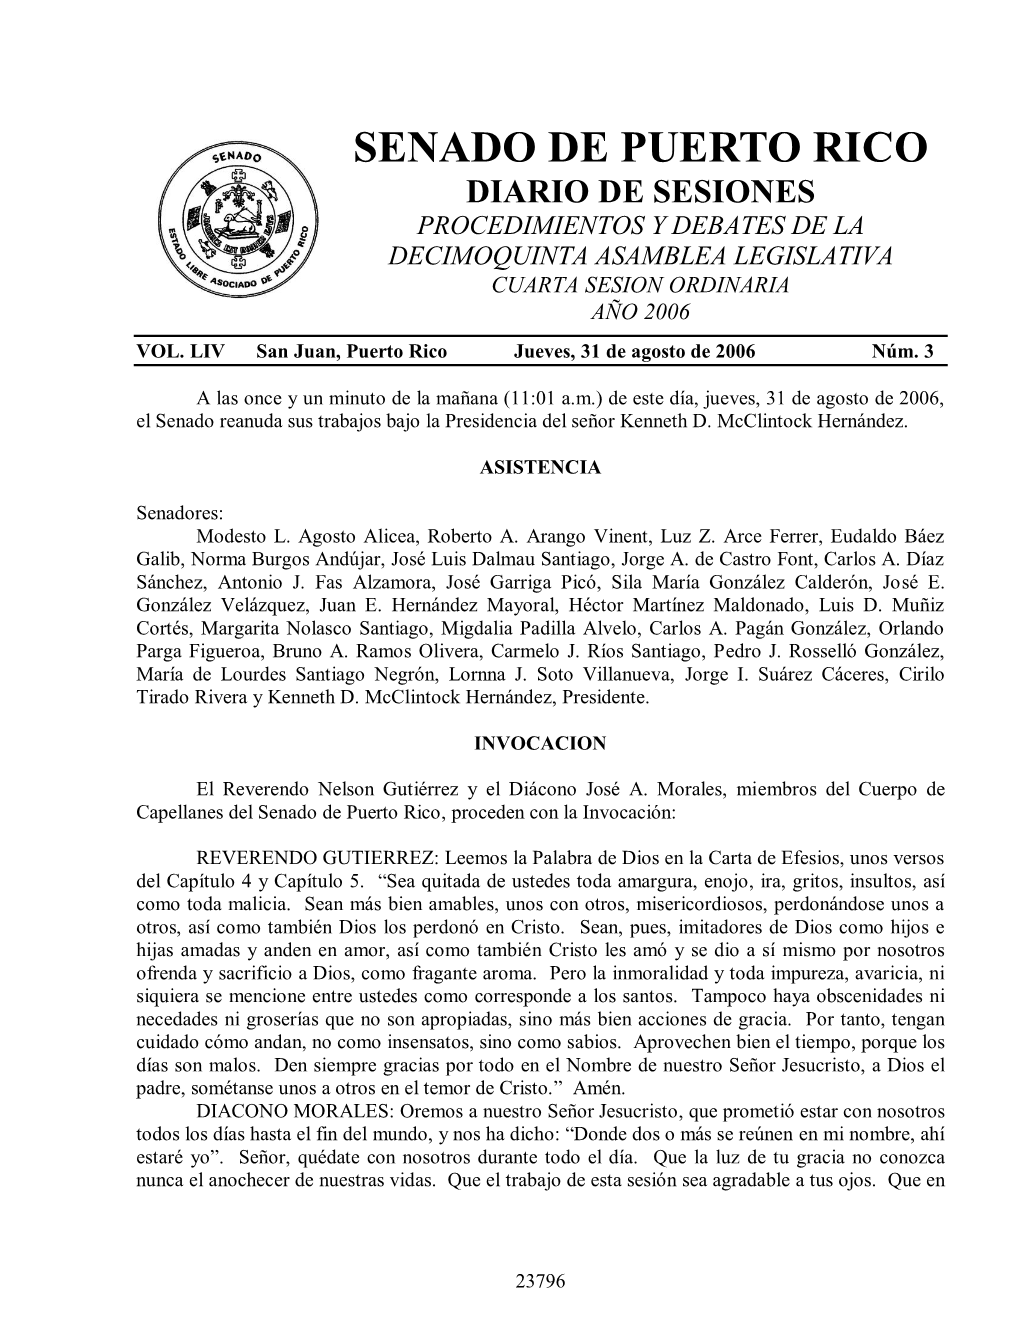 Senado De Puerto Rico Diario De Sesiones Procedimientos Y Debates De La Decimoquinta Asamblea Legislativa Cuarta Sesion Ordinaria Año 2006 Vol